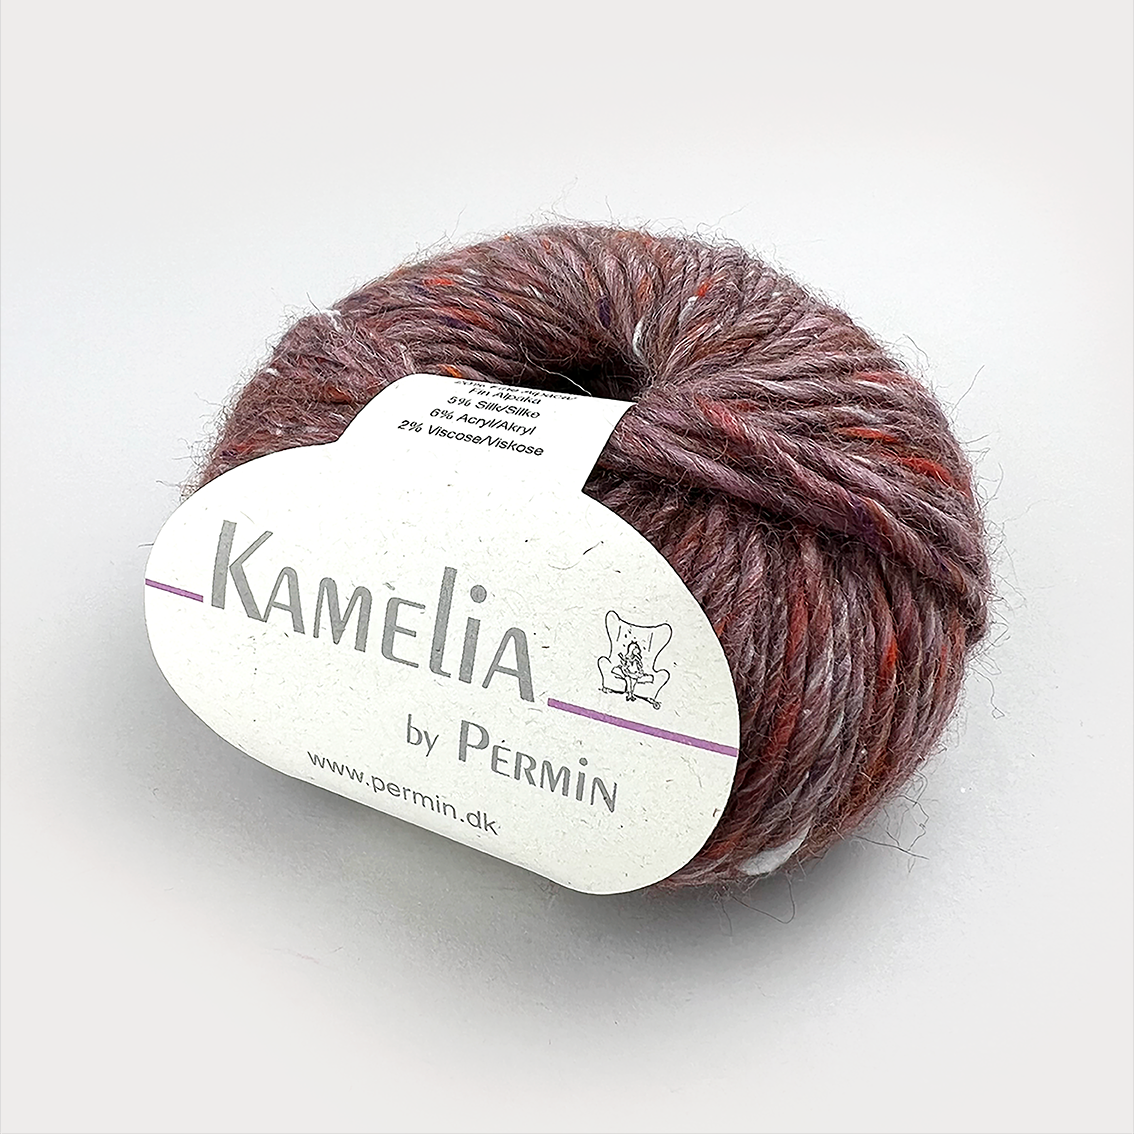 Kamelia | by Permin